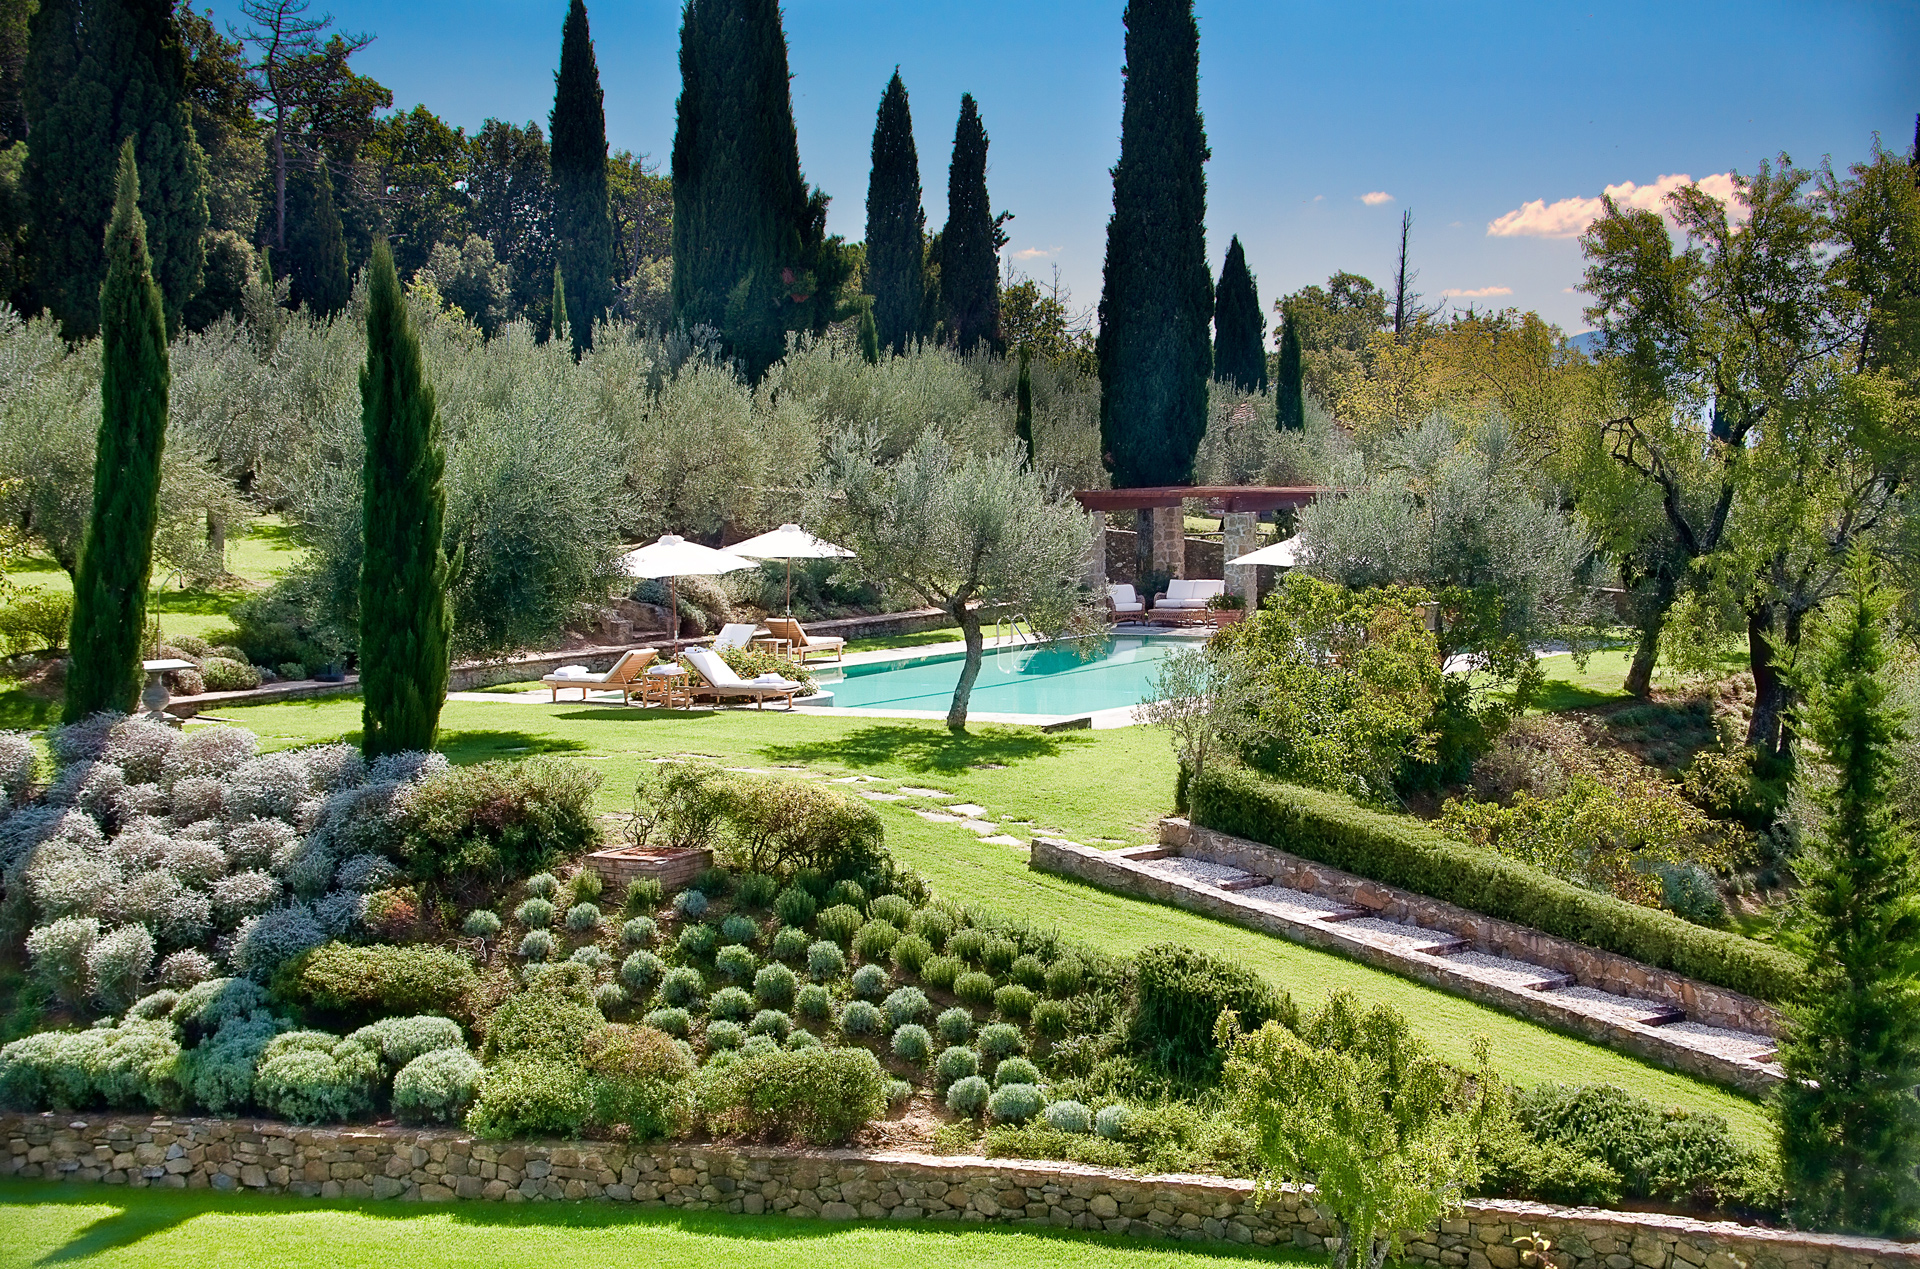 Pool and garden of Convento dei Cappuccini, Umbria